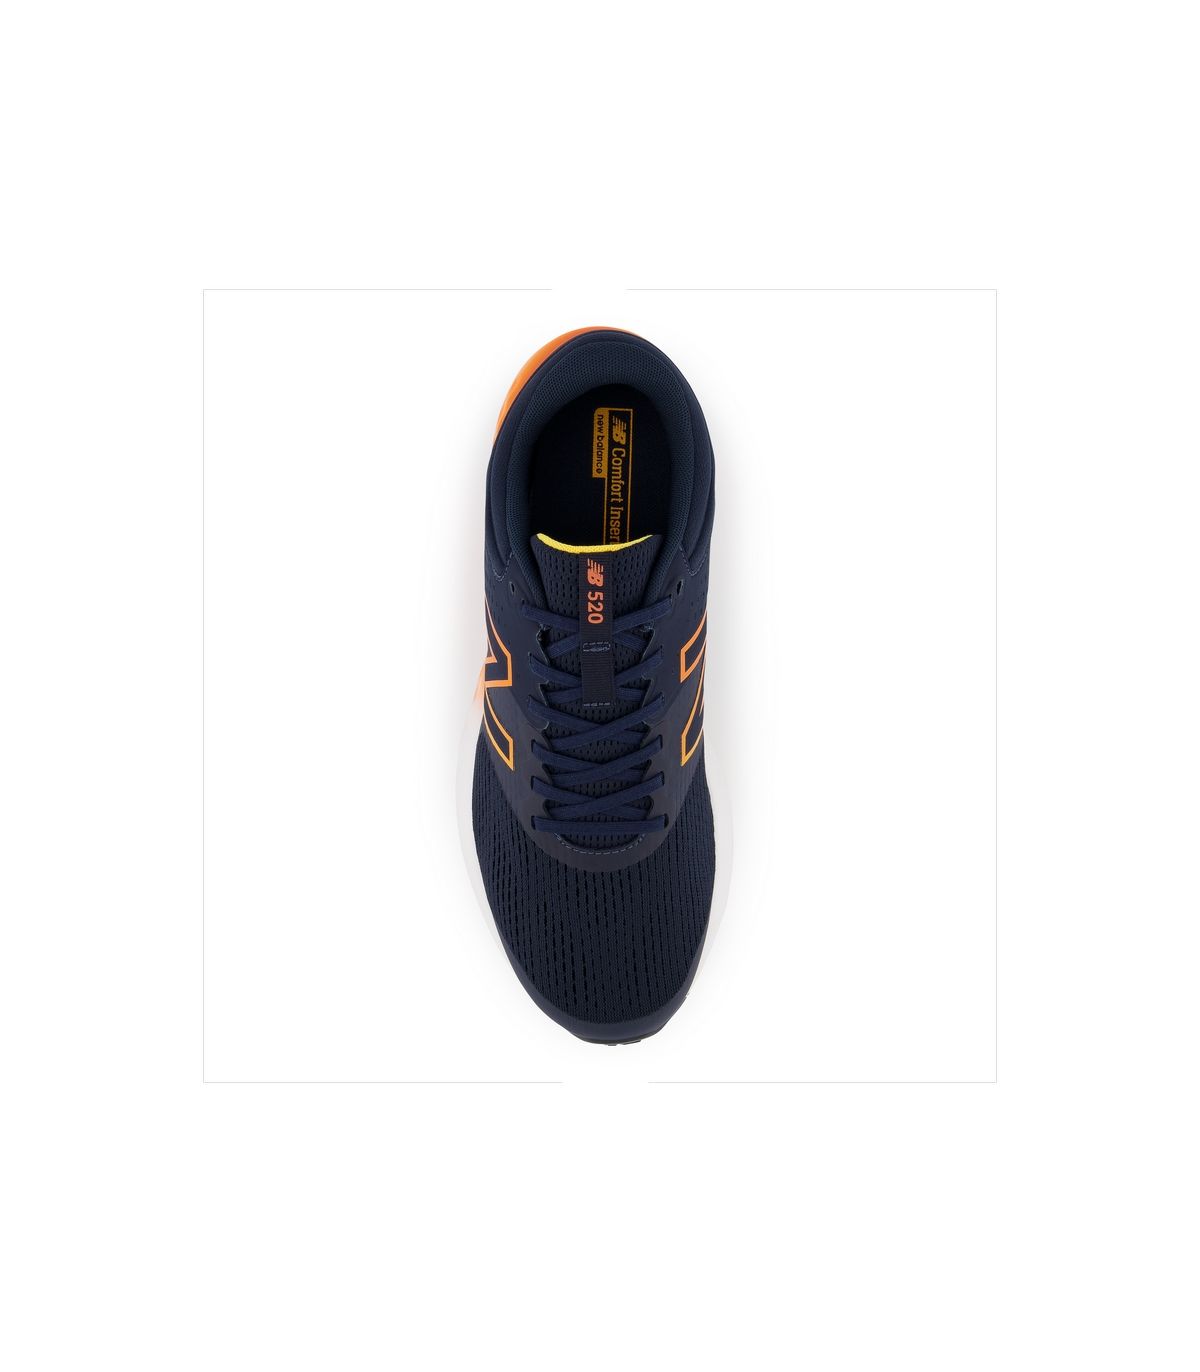 Zapatillas New 520 Hombre Blue Orange. Oferta Comprar